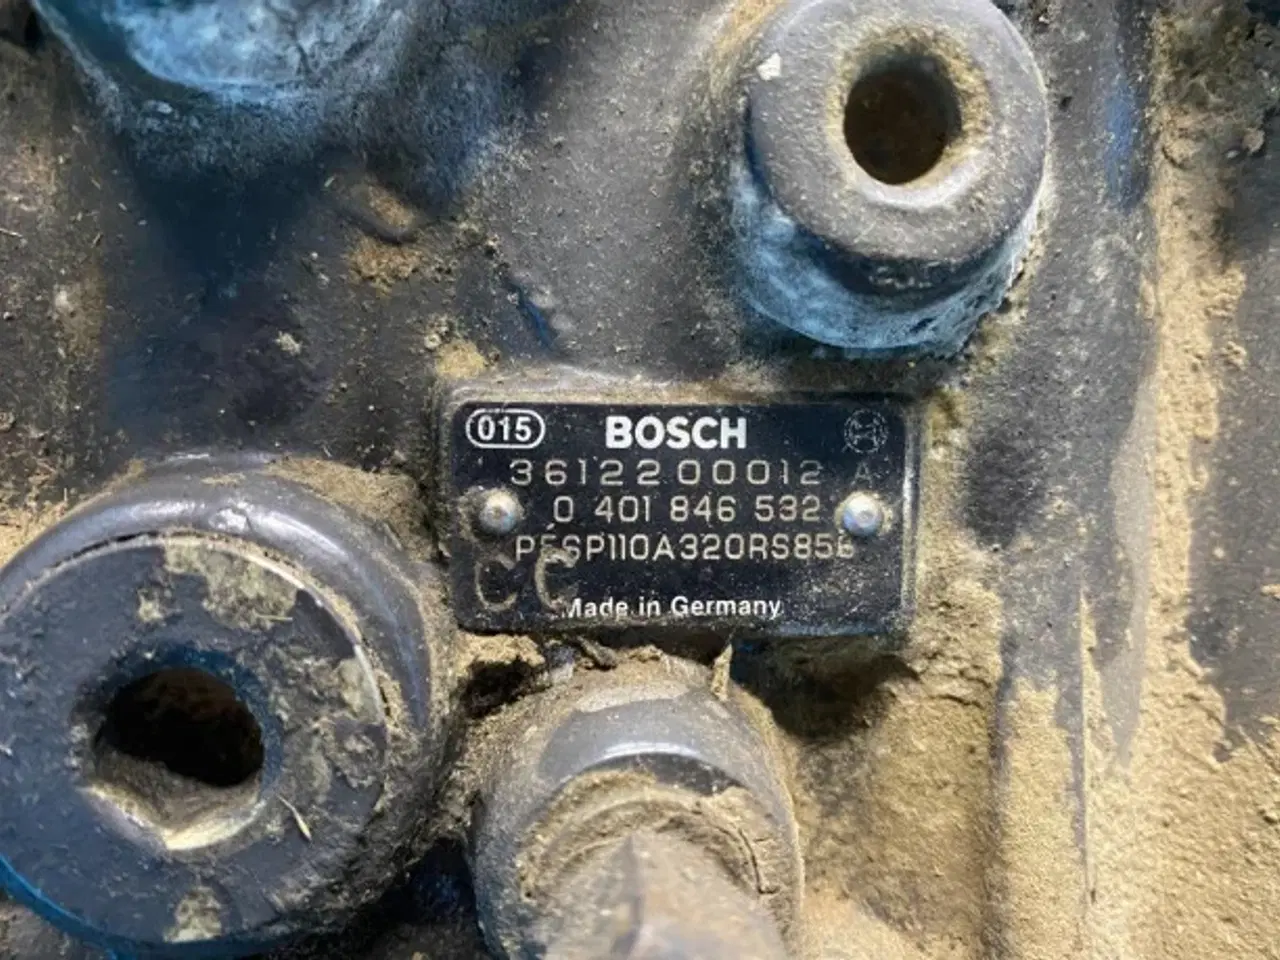 Billede 9 - Brændstofpumpe Bosch 0401846532